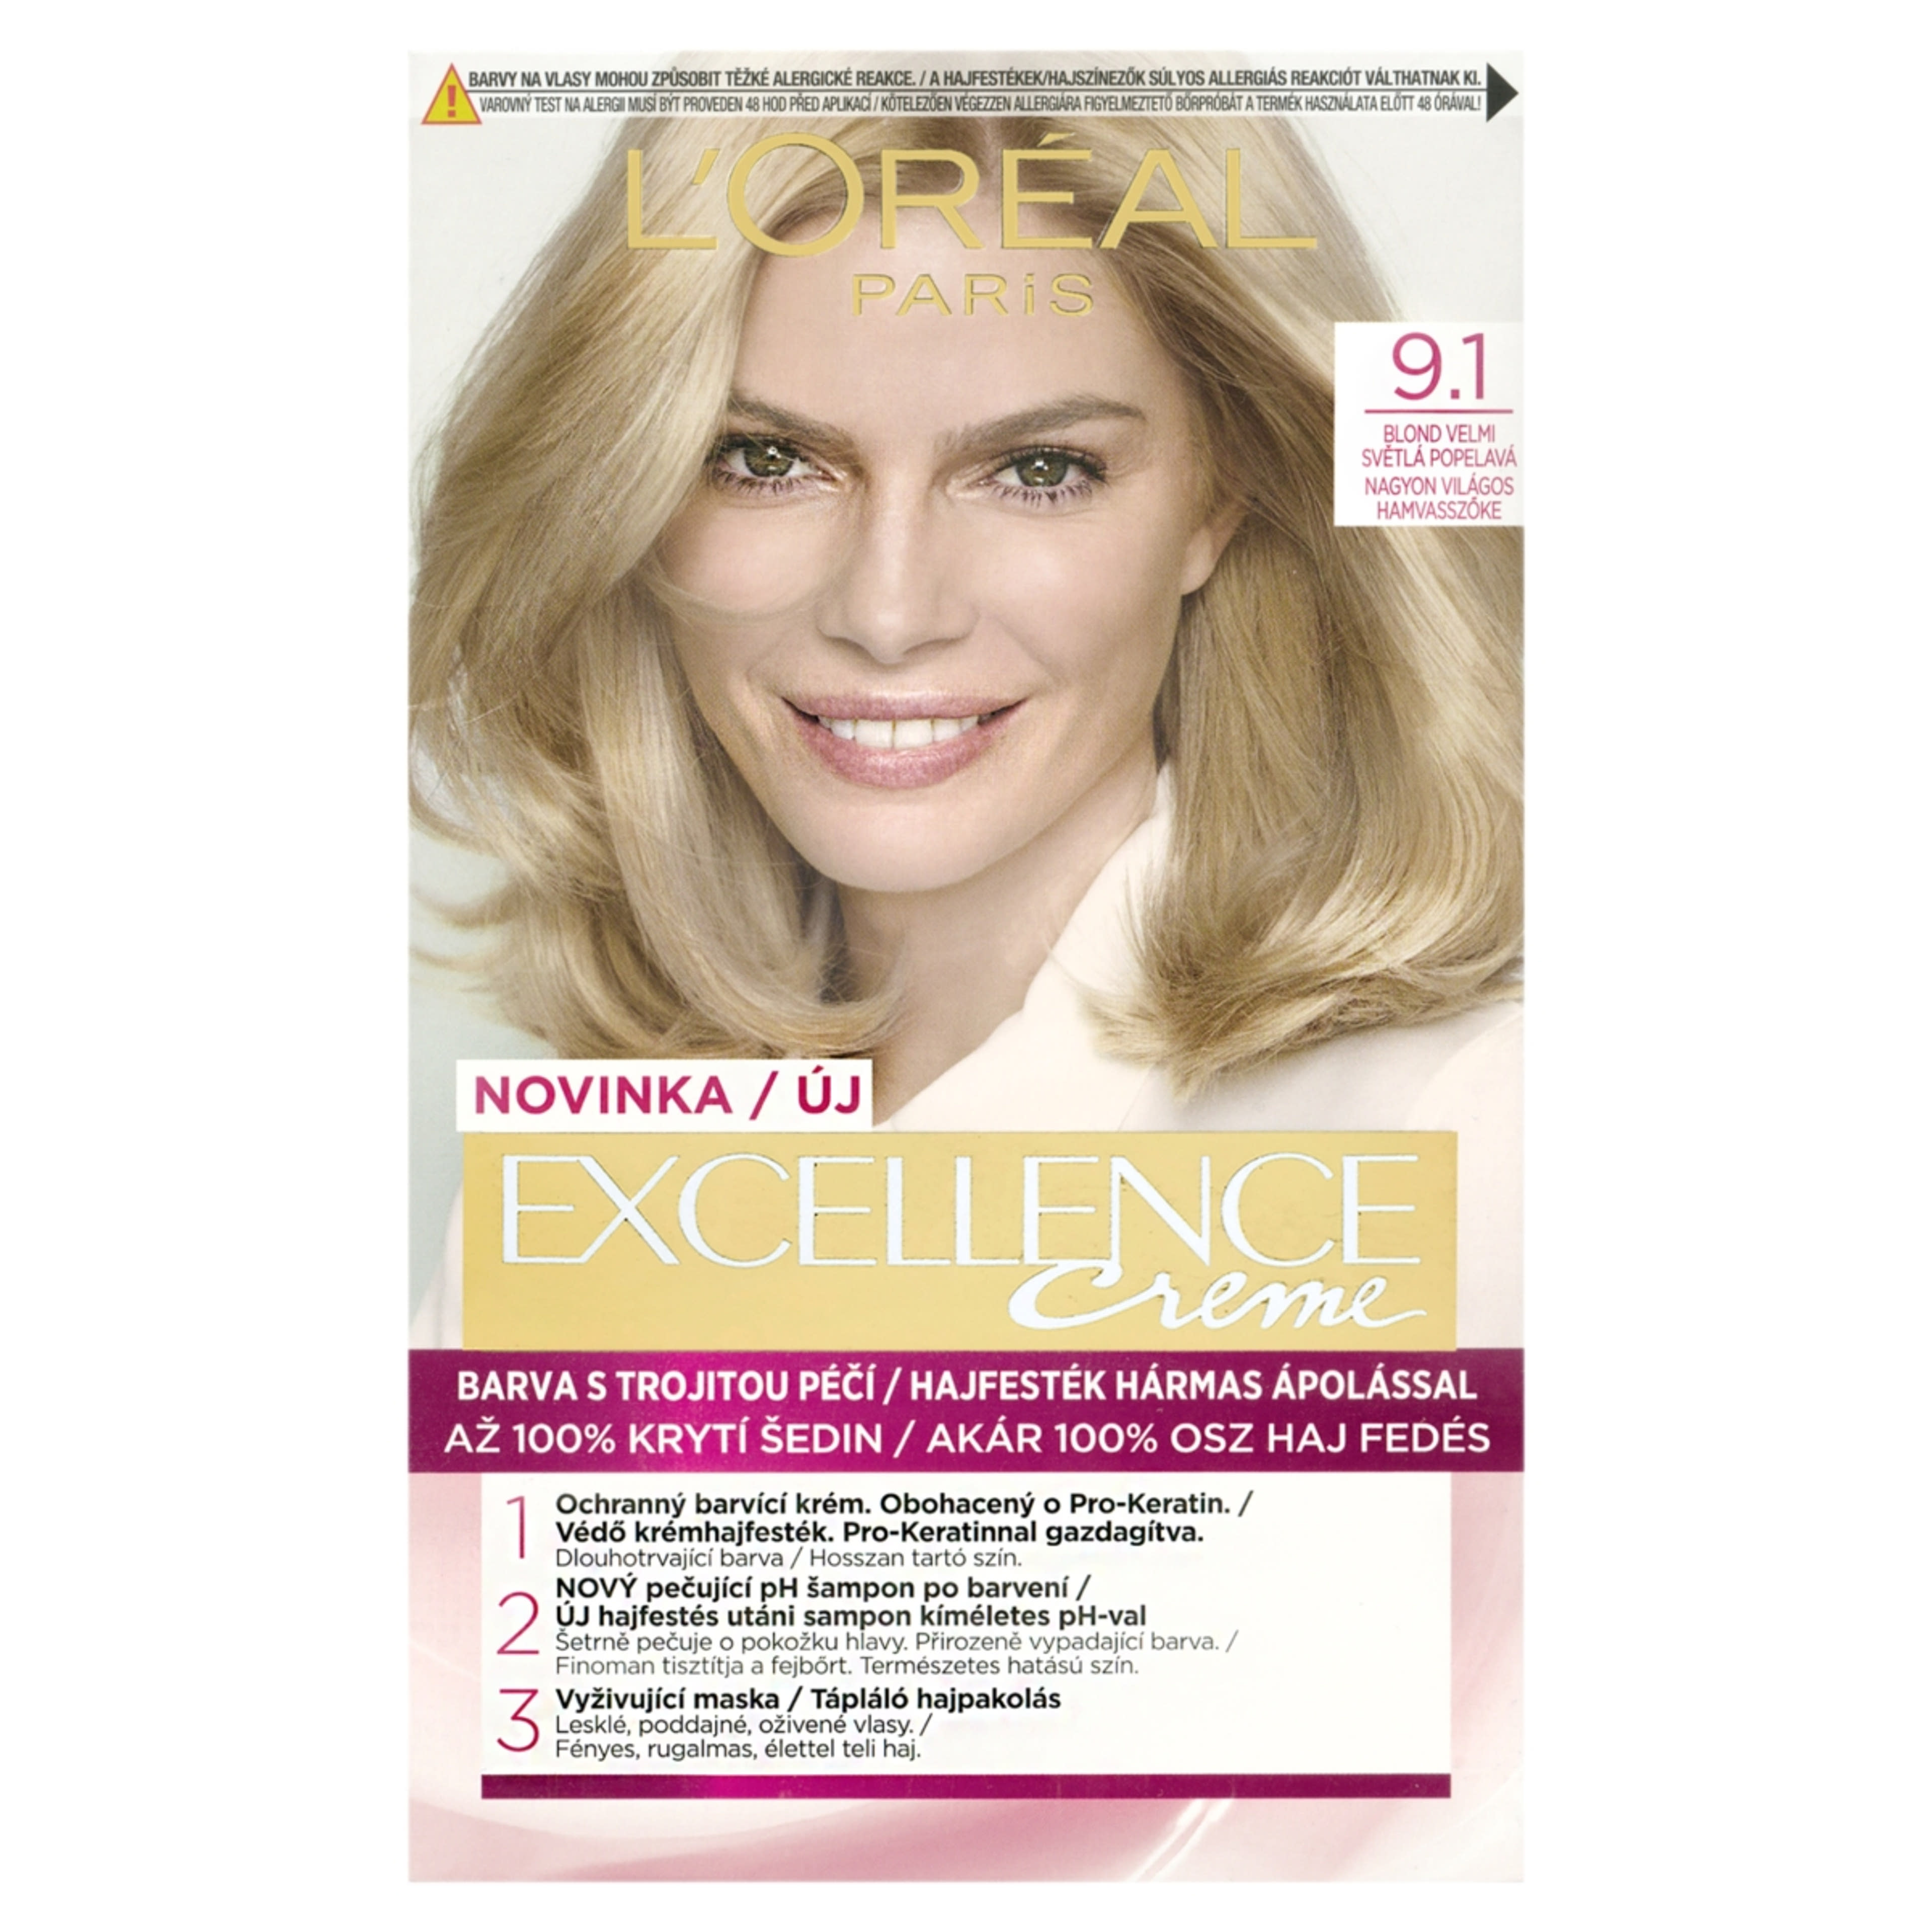 L'Oréal Paris Excellence krémes, tartós hajfesték 9.1 nagyon világos hamvaszszőke - 1 db-1